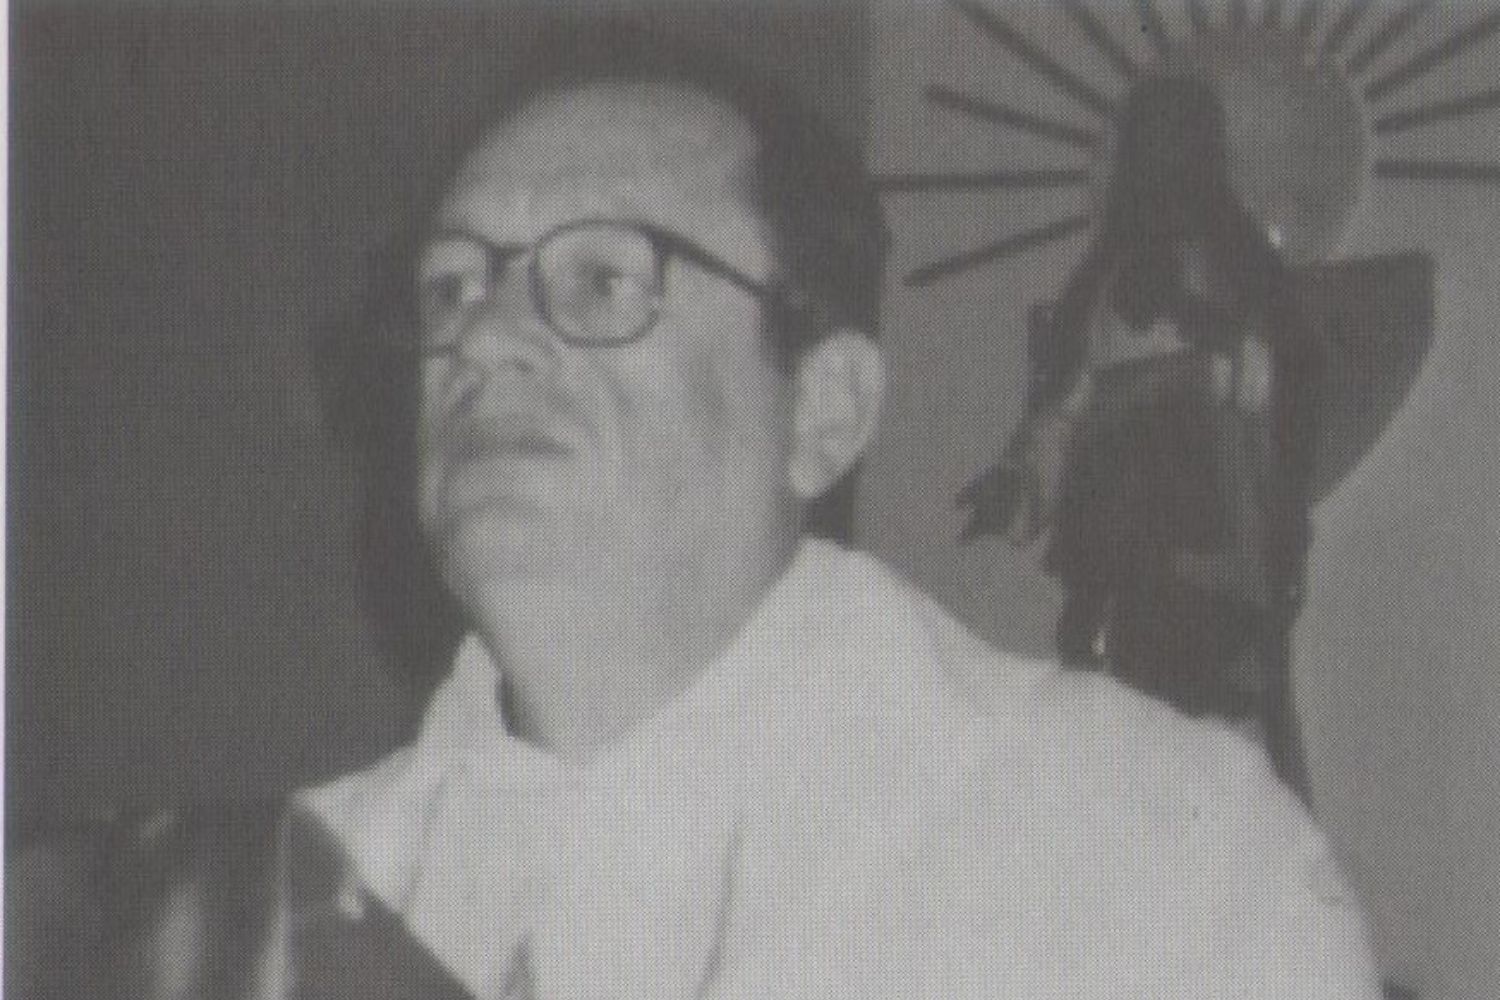 Pe Marival Domingos Pansarello, que nasceu em 4/12/1951 e faleceu em 7/12/1999